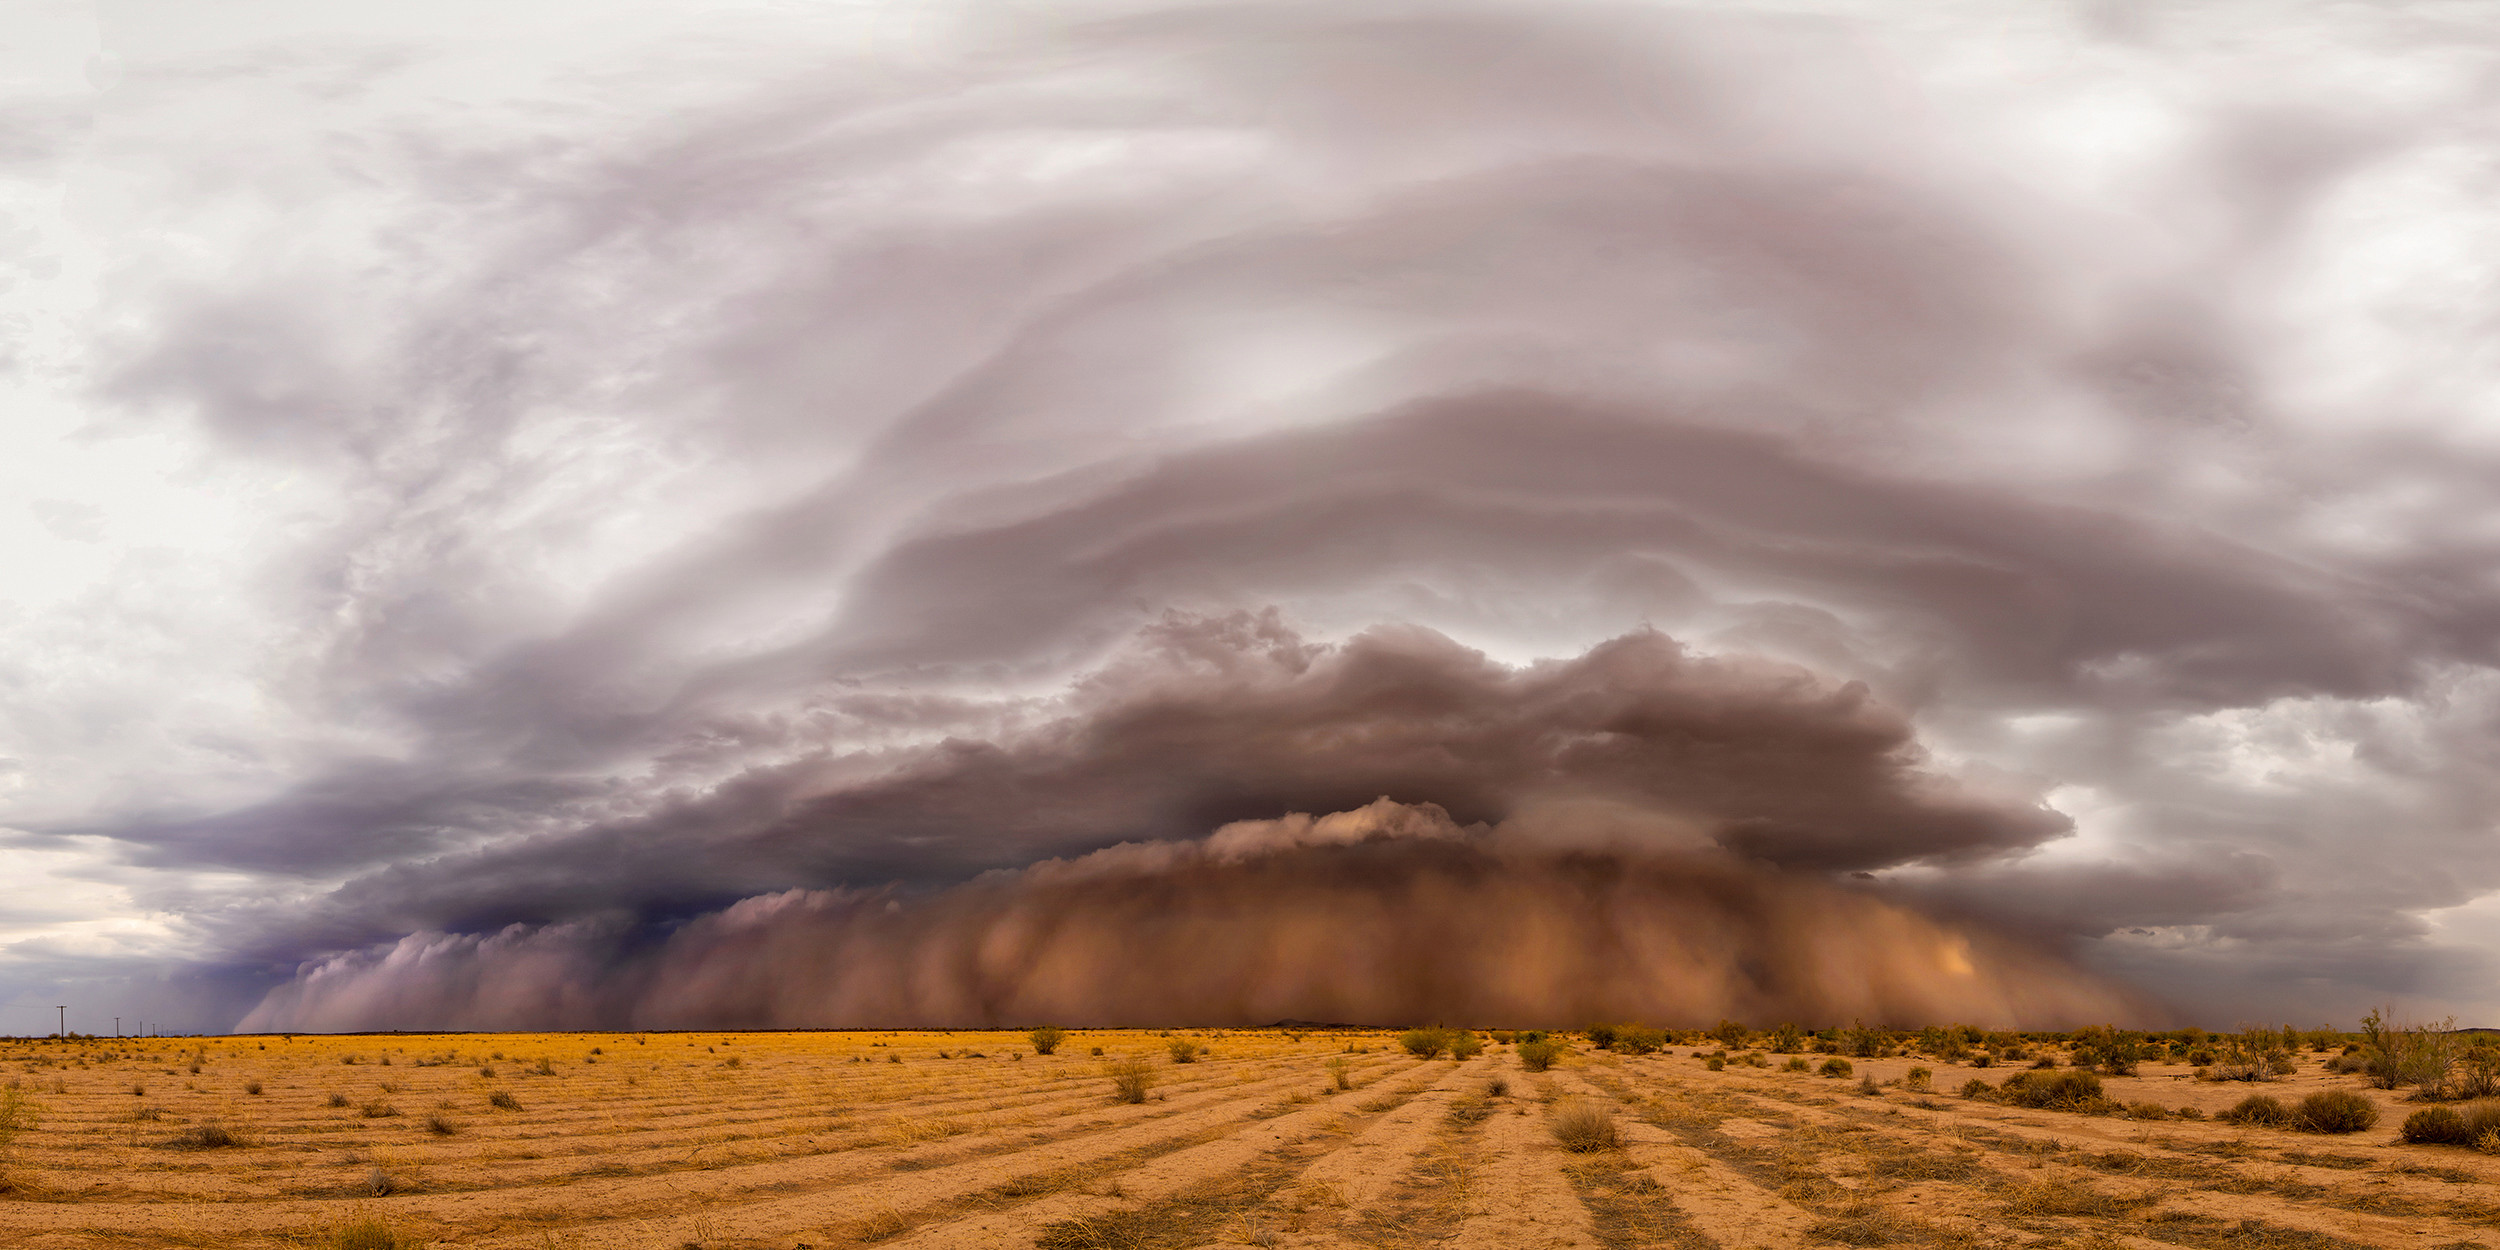 Bức ảnh 'Apocalyptic' của Kevin Juberg thể hiện một cơn bão cát khổng lồ đang hình thành ở Arizona, Mỹ. Nơi đây cũng được ghi nhận đã sản sinh ra những cơn bão cát lớn nhất thế giới.